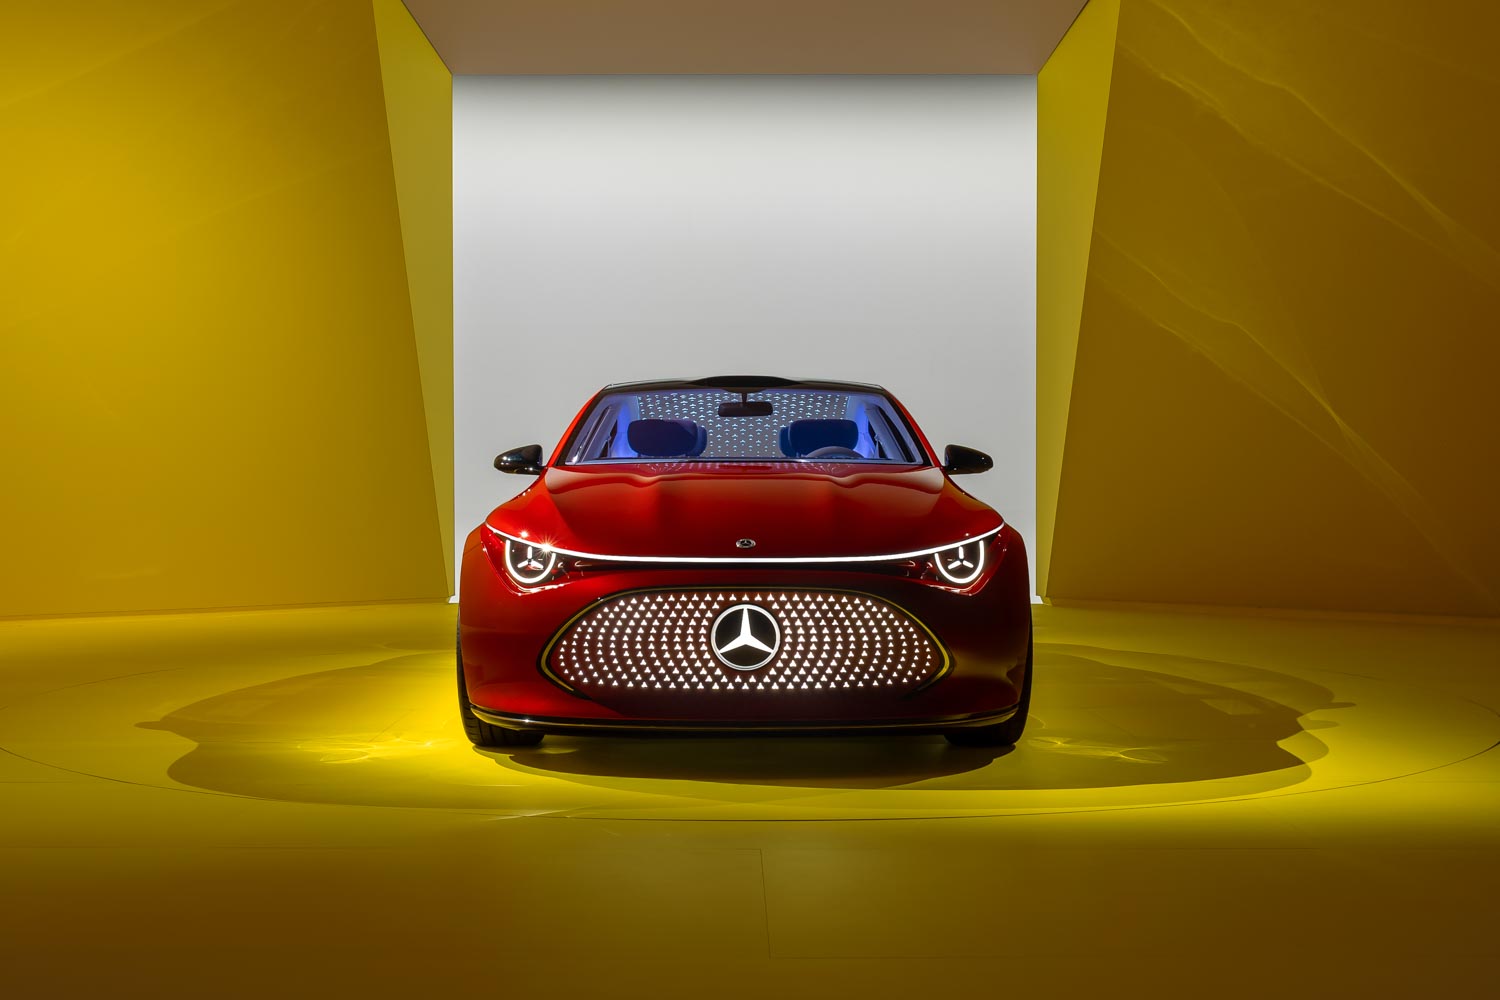 La Mercedes CLA Concept è il prototipo che eleva l'esperienza elettrica e dà vita ad una nuova famiglia di modelli